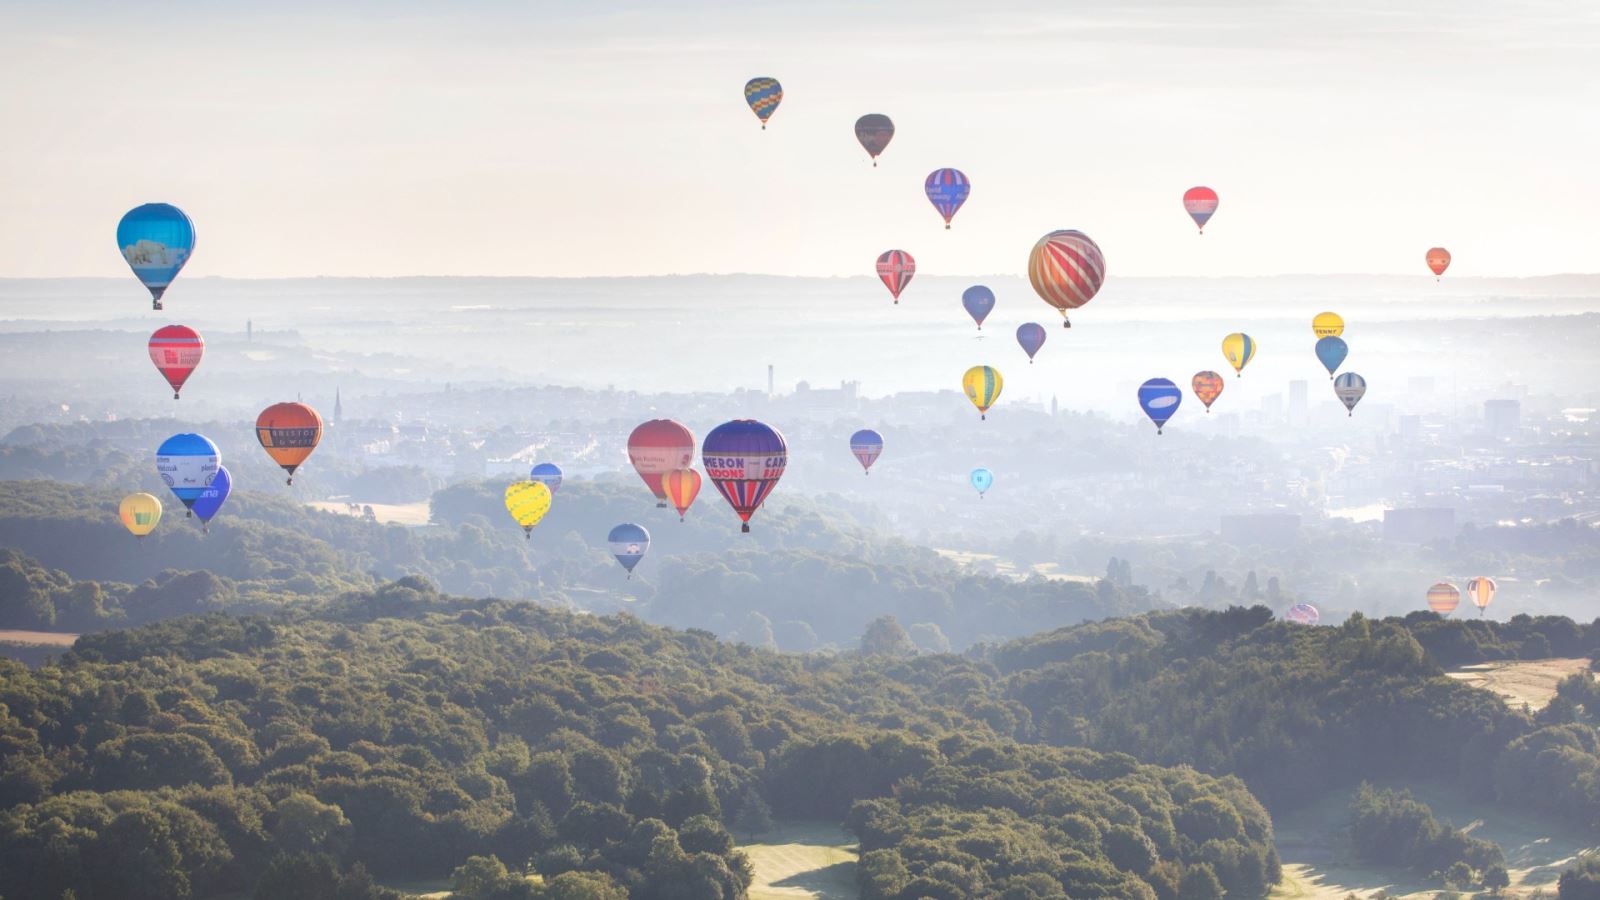 A mass ascent of hot air balloons over Bristol